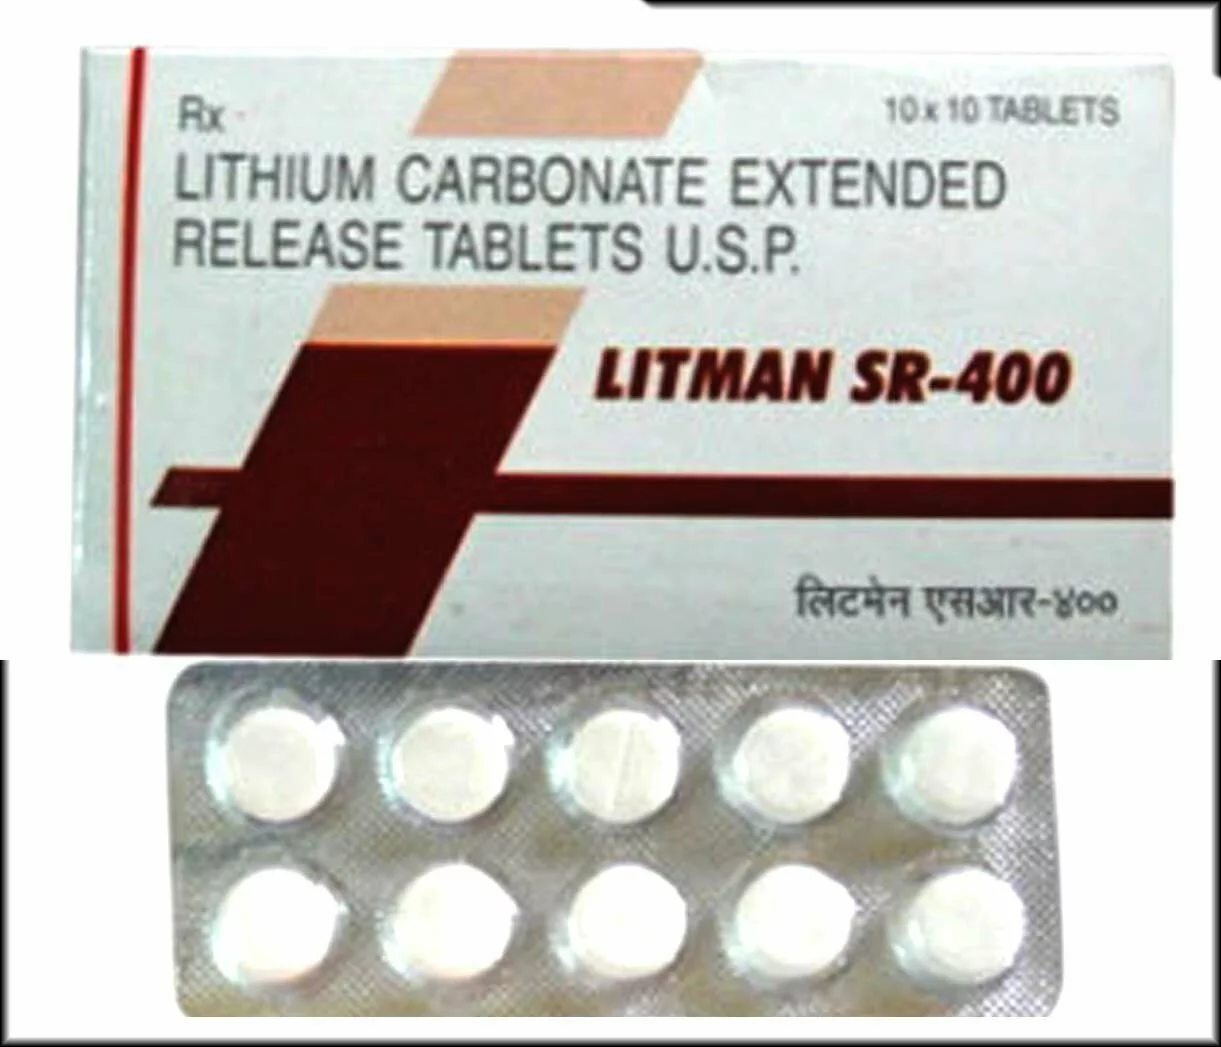  Escalith Generic Lithium